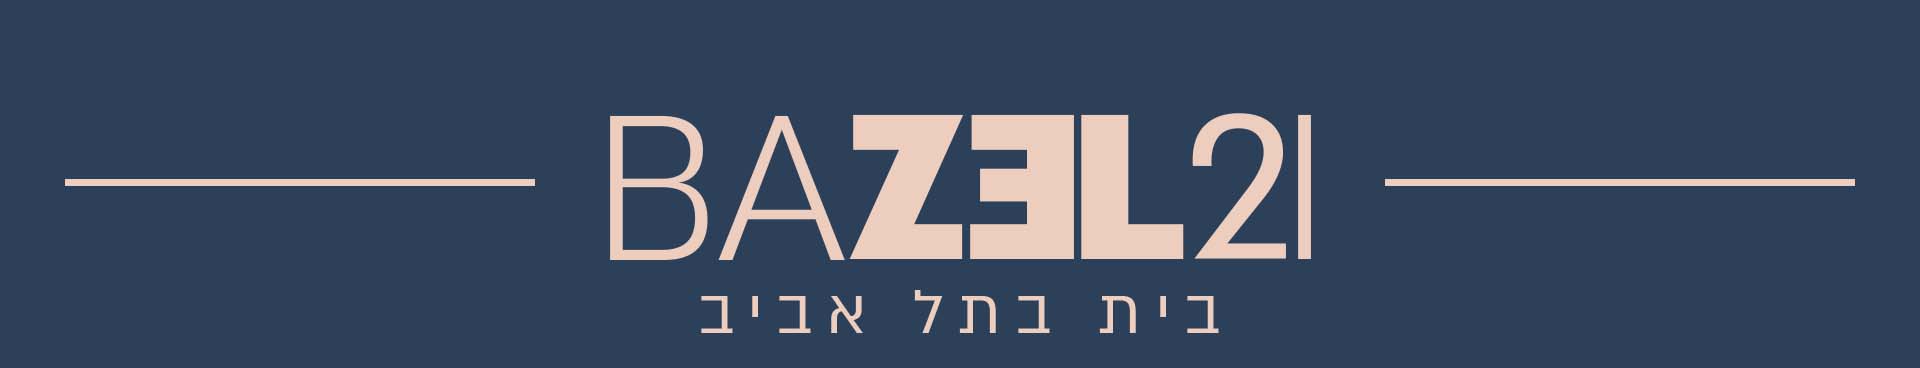 בזל 21 תל אביב